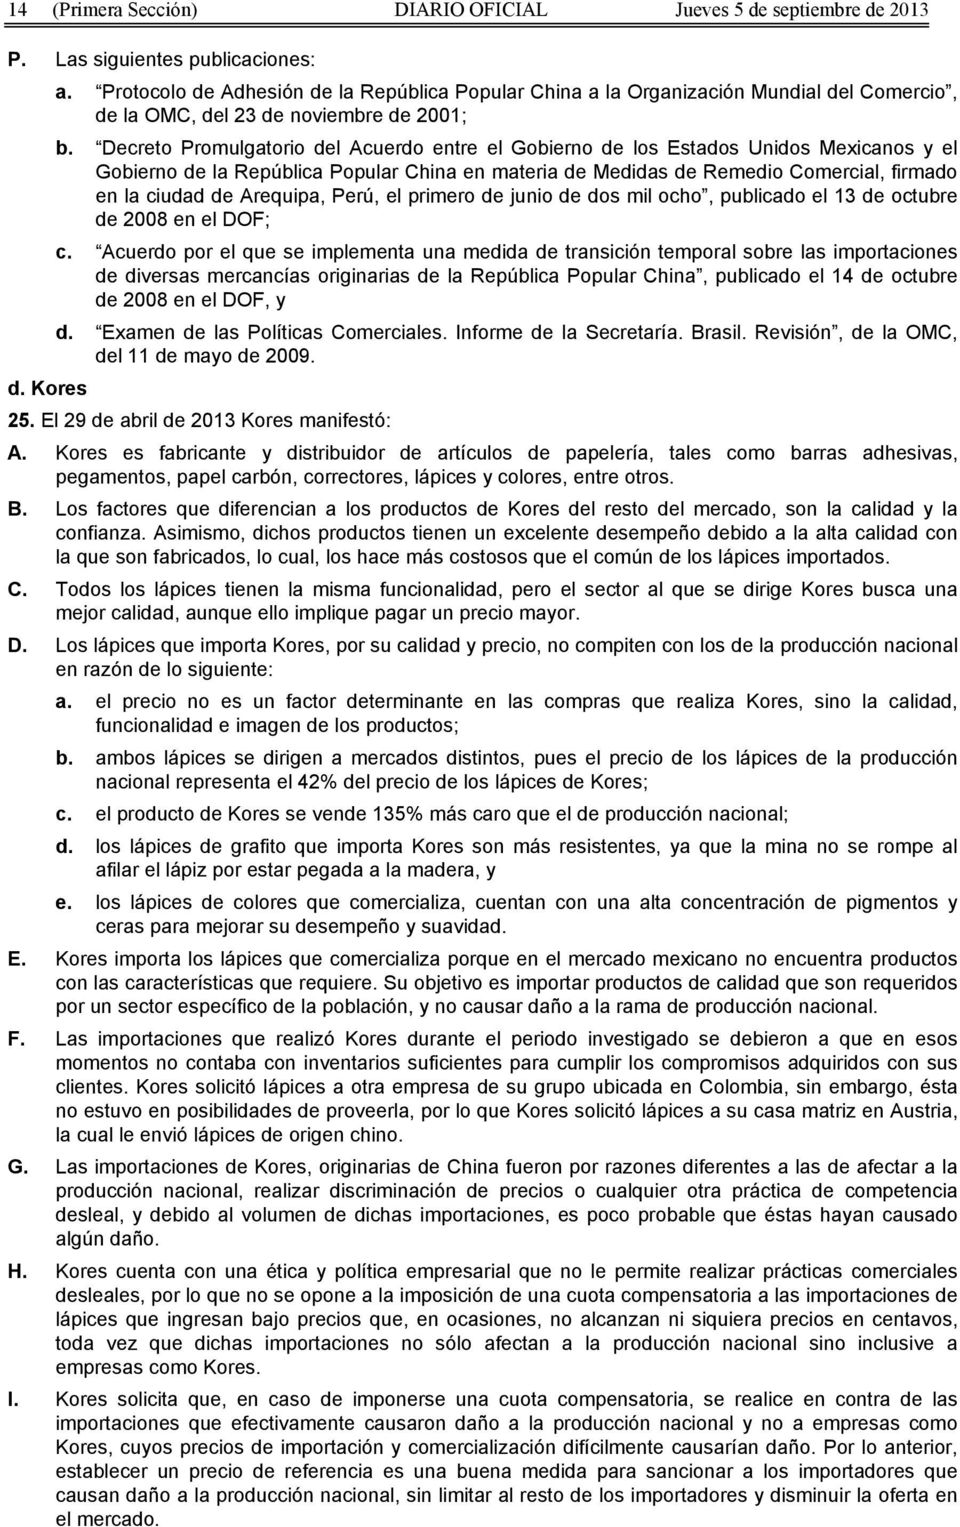 Decreto Promulgatorio del Acuerdo entre el Gobierno de los Estados Unidos Mexicanos y el Gobierno de la República Popular China en materia de Medidas de Remedio Comercial, firmado en la ciudad de